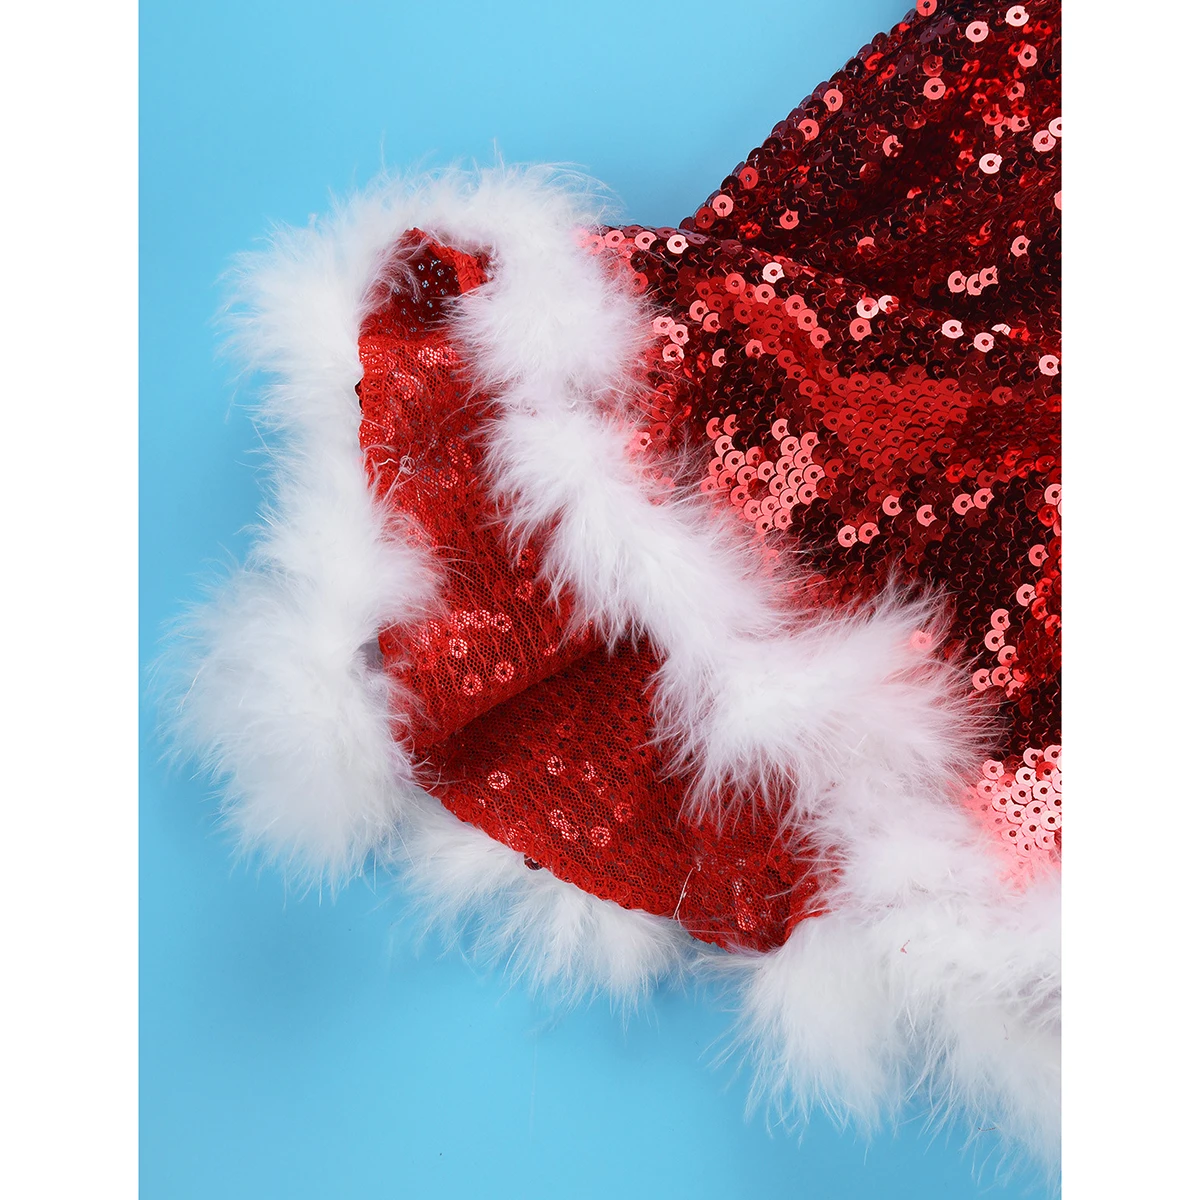 Детские Рождественские танцевальные костюмы Санта лирического Санты для девочек с блестками гимнастический трико для катания на коньках балетное танцевальное платье с шапкой рукава